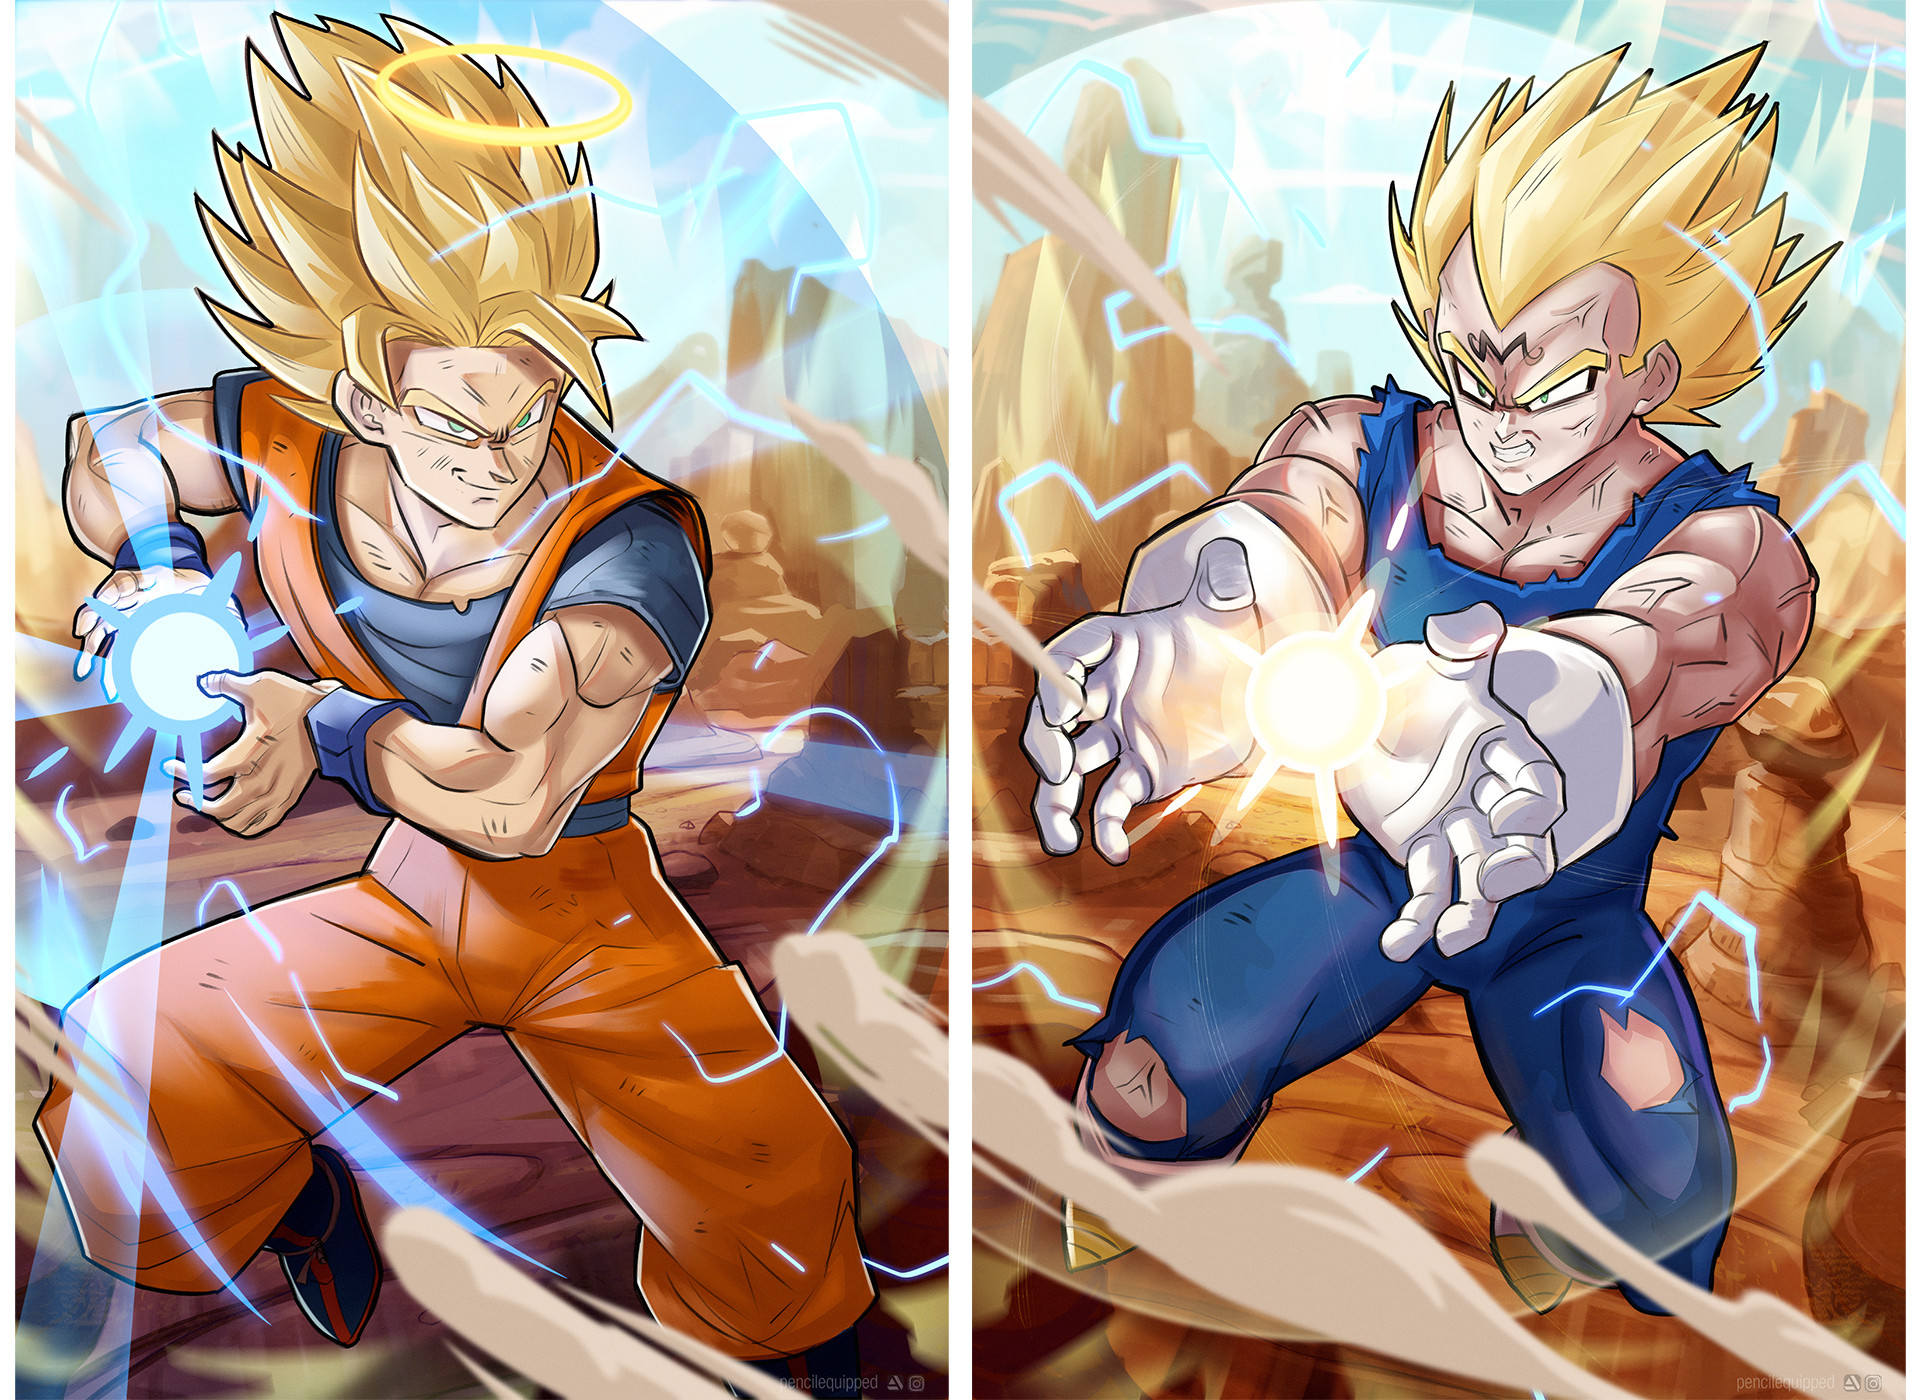 ArtStation - Majin Vegeta vs Goku SSJ2